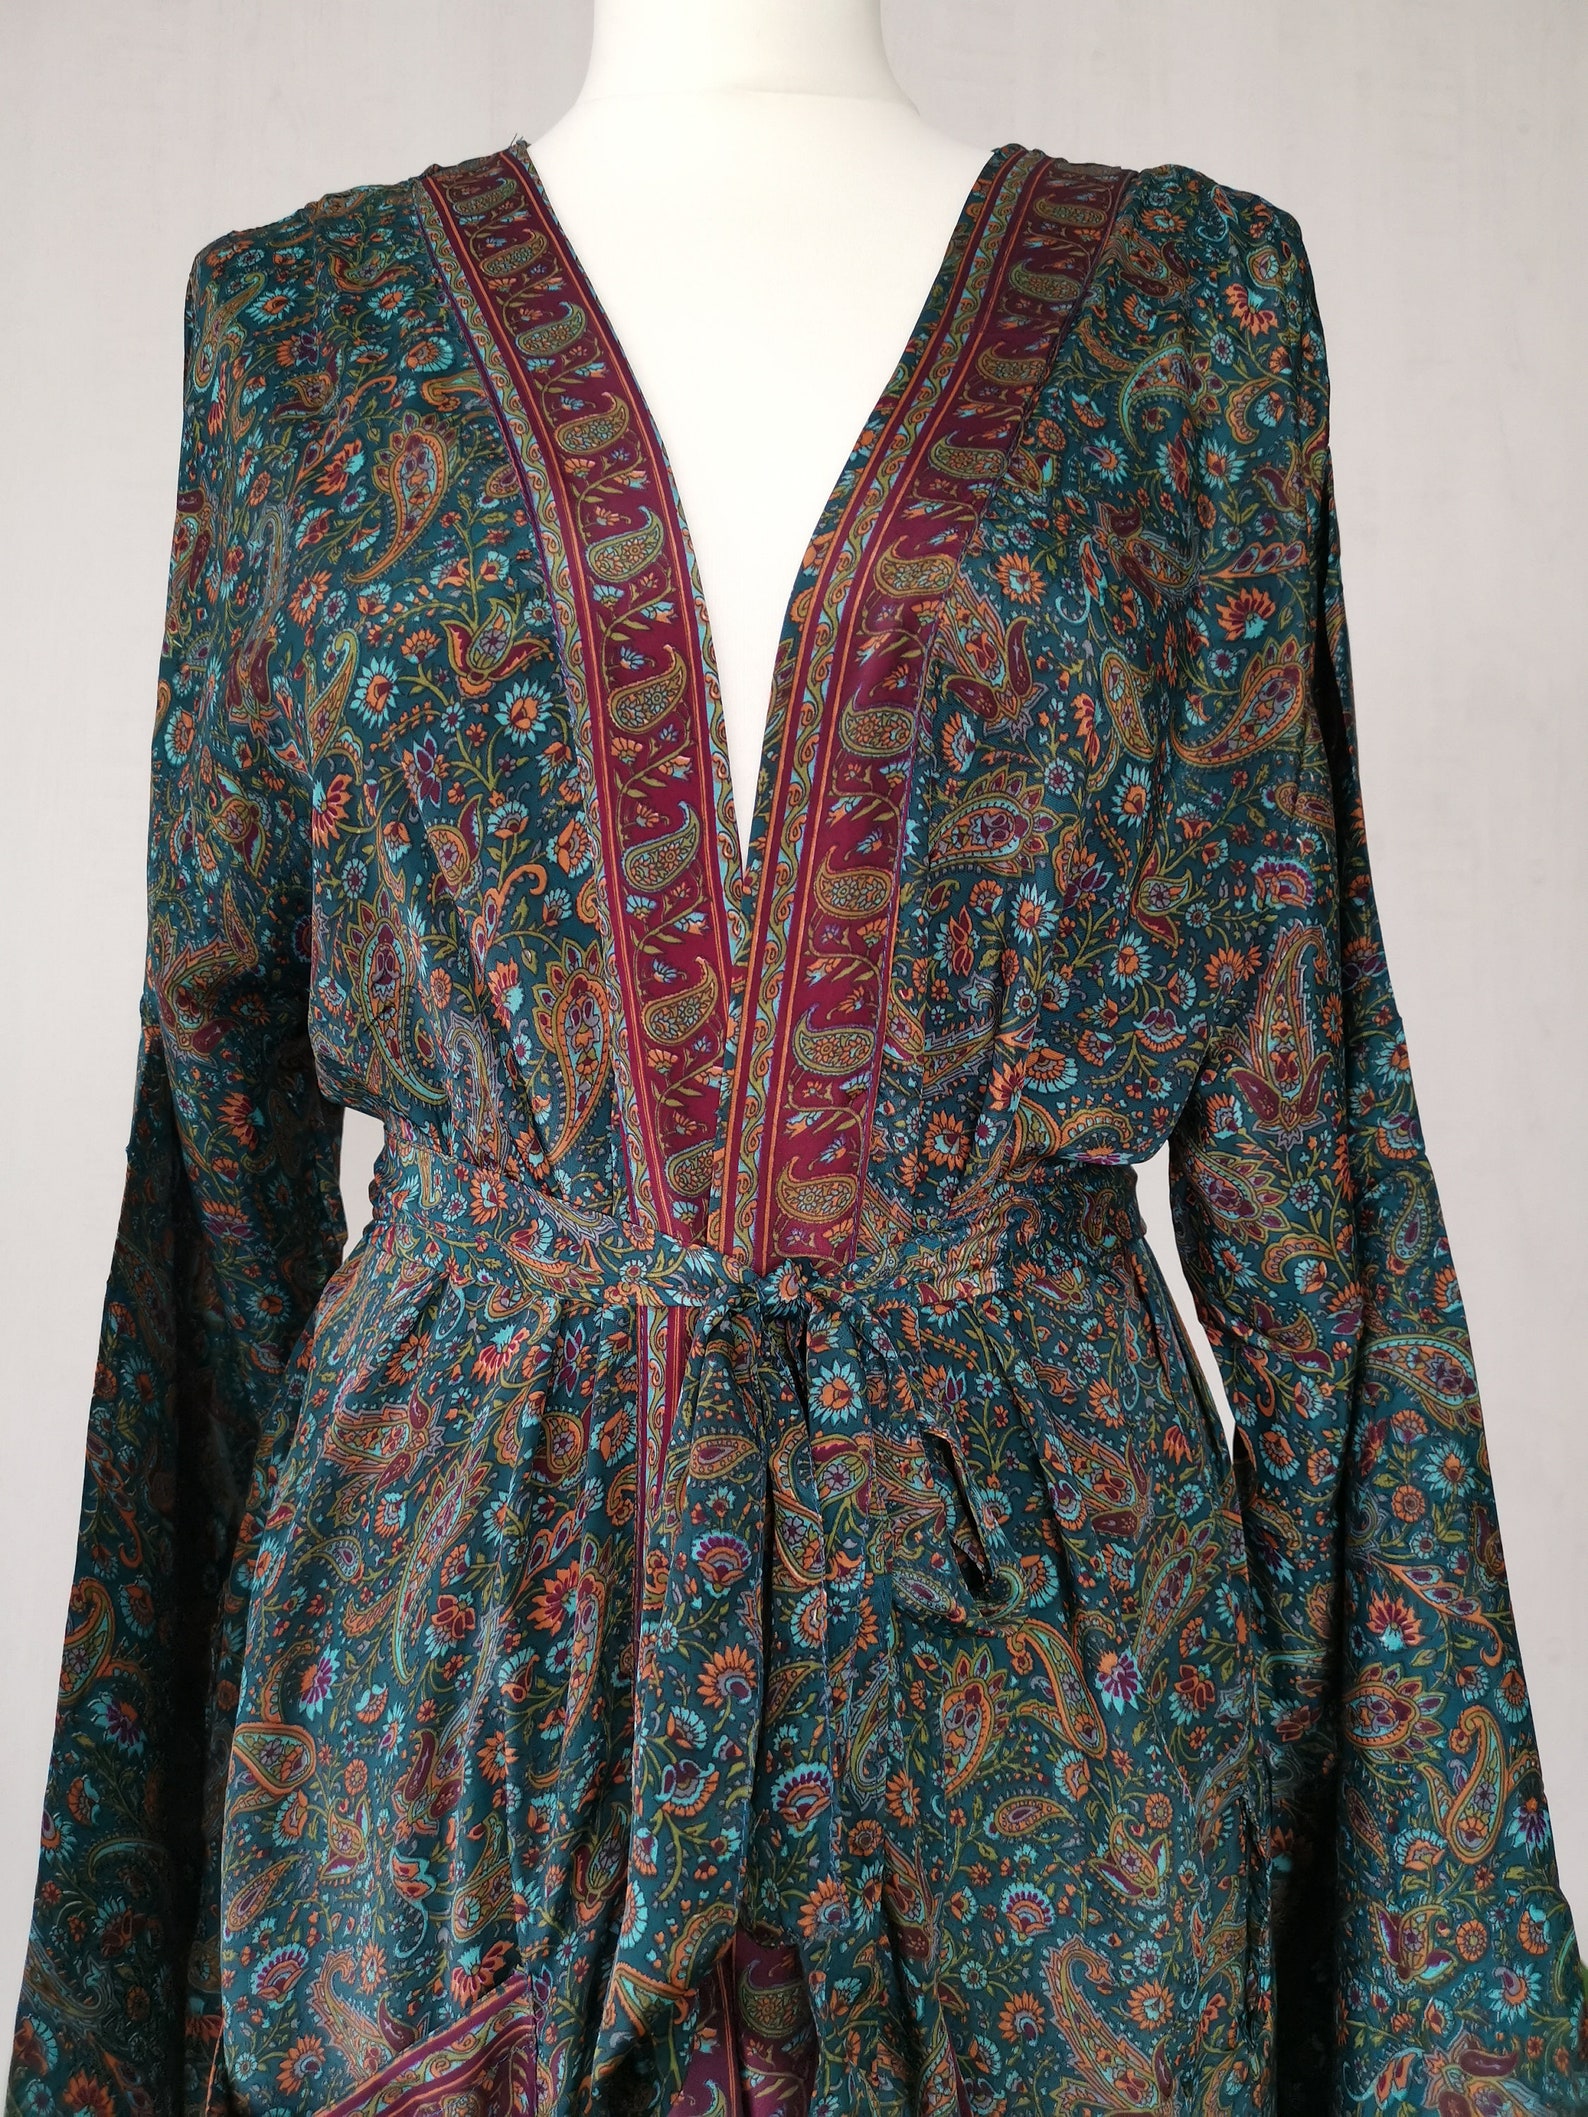 New Silk Sari Boho Kimono Regal House Robe Luxury Lounge - Etsy UK